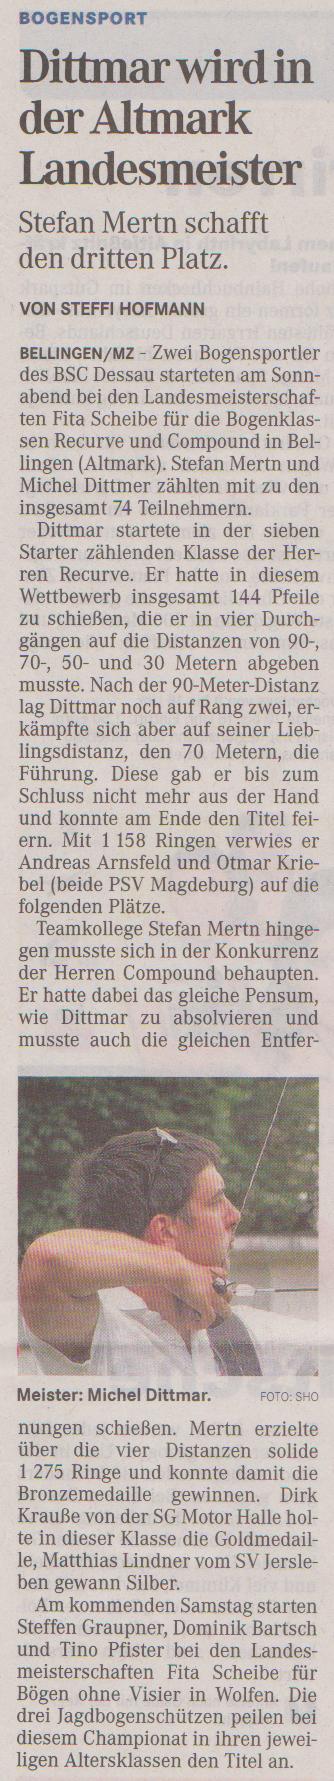 Landesmeisterschaft Fita Scheibe für Recurve und Compound – Mitteldeutsche Zeitung vom 04.07.2012